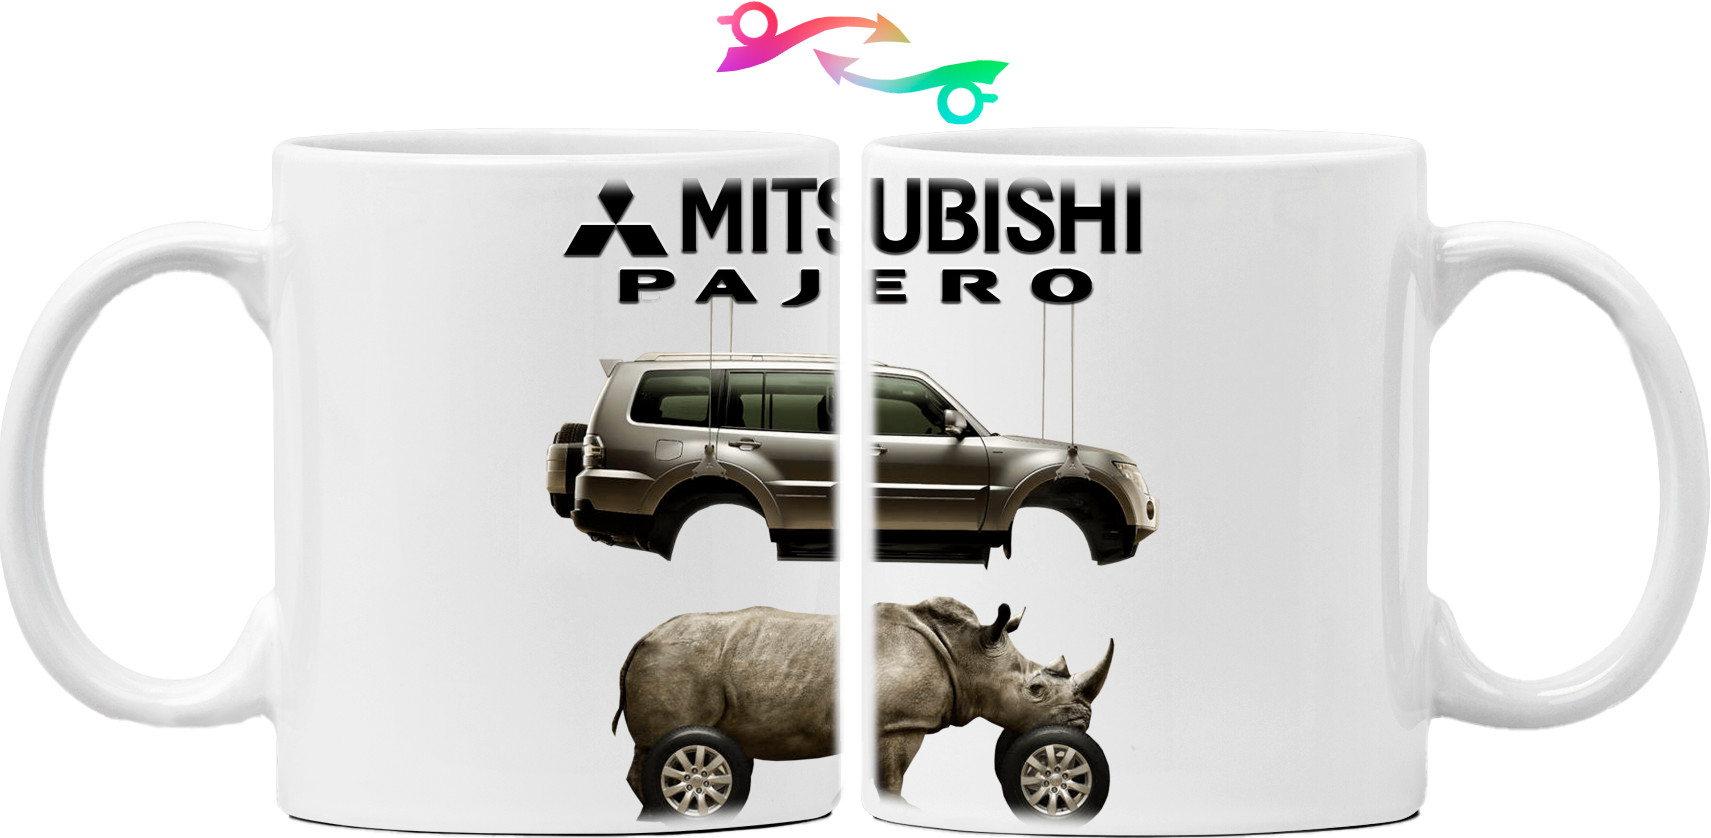 Mitsubishi - Logo - Pajero - 1